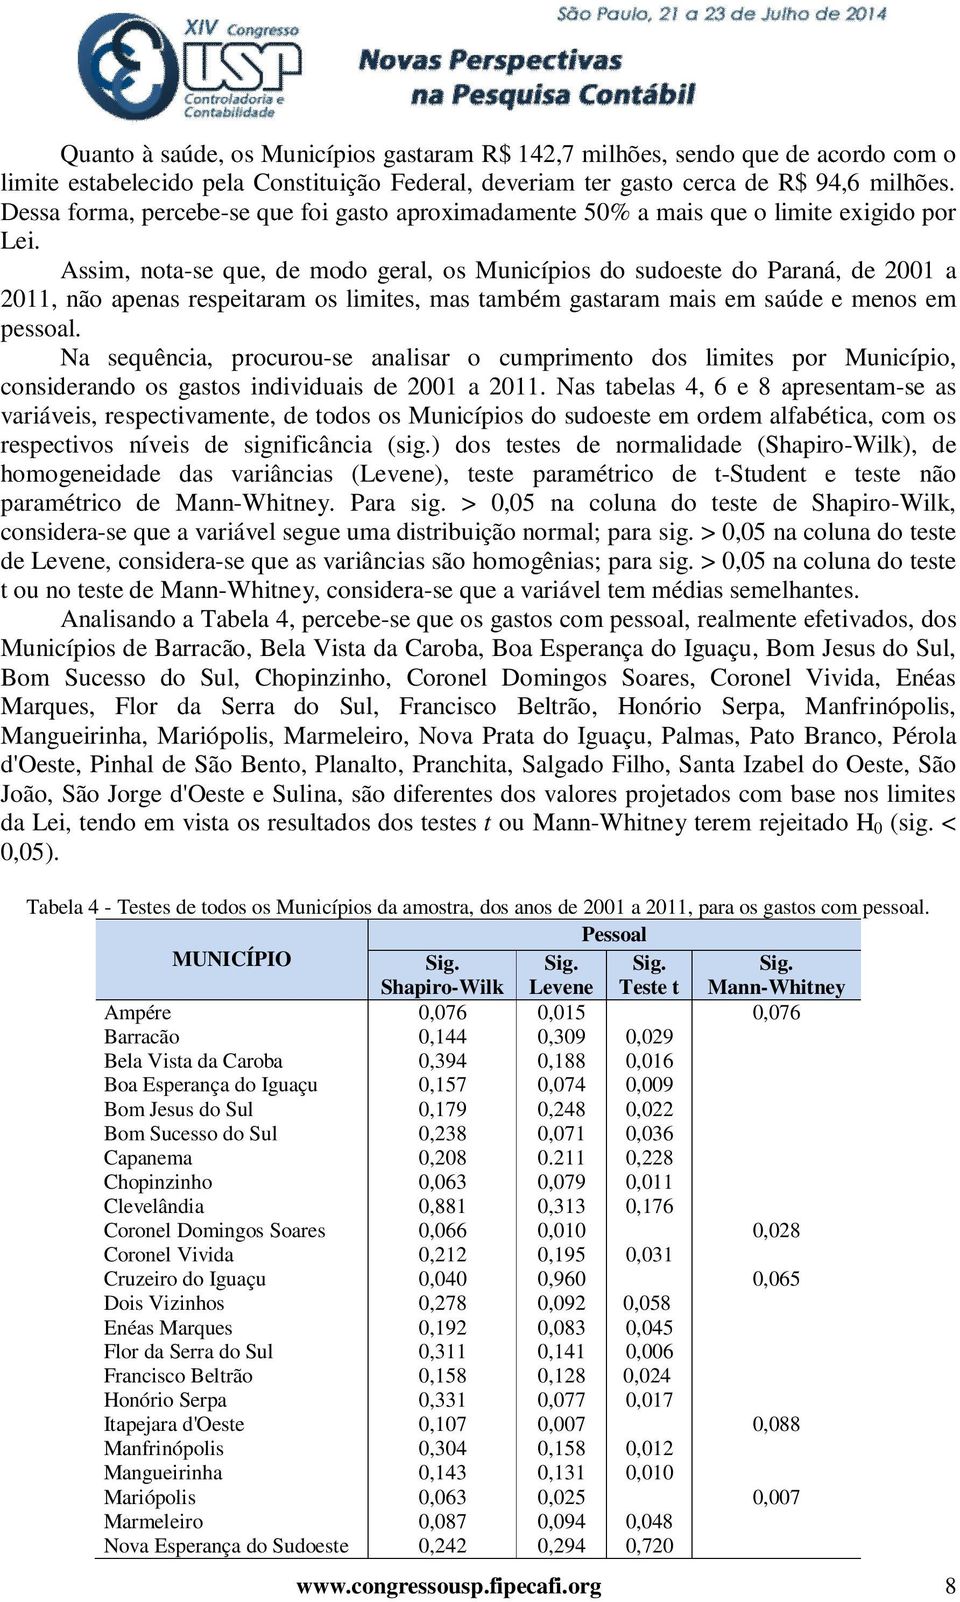 Assim, nota-se que, de modo geral, os Municípios do sudoeste do Paraná, de 2001 a 2011, não apenas respeitaram os limites, mas também gastaram mais em saúde e menos em pessoal.